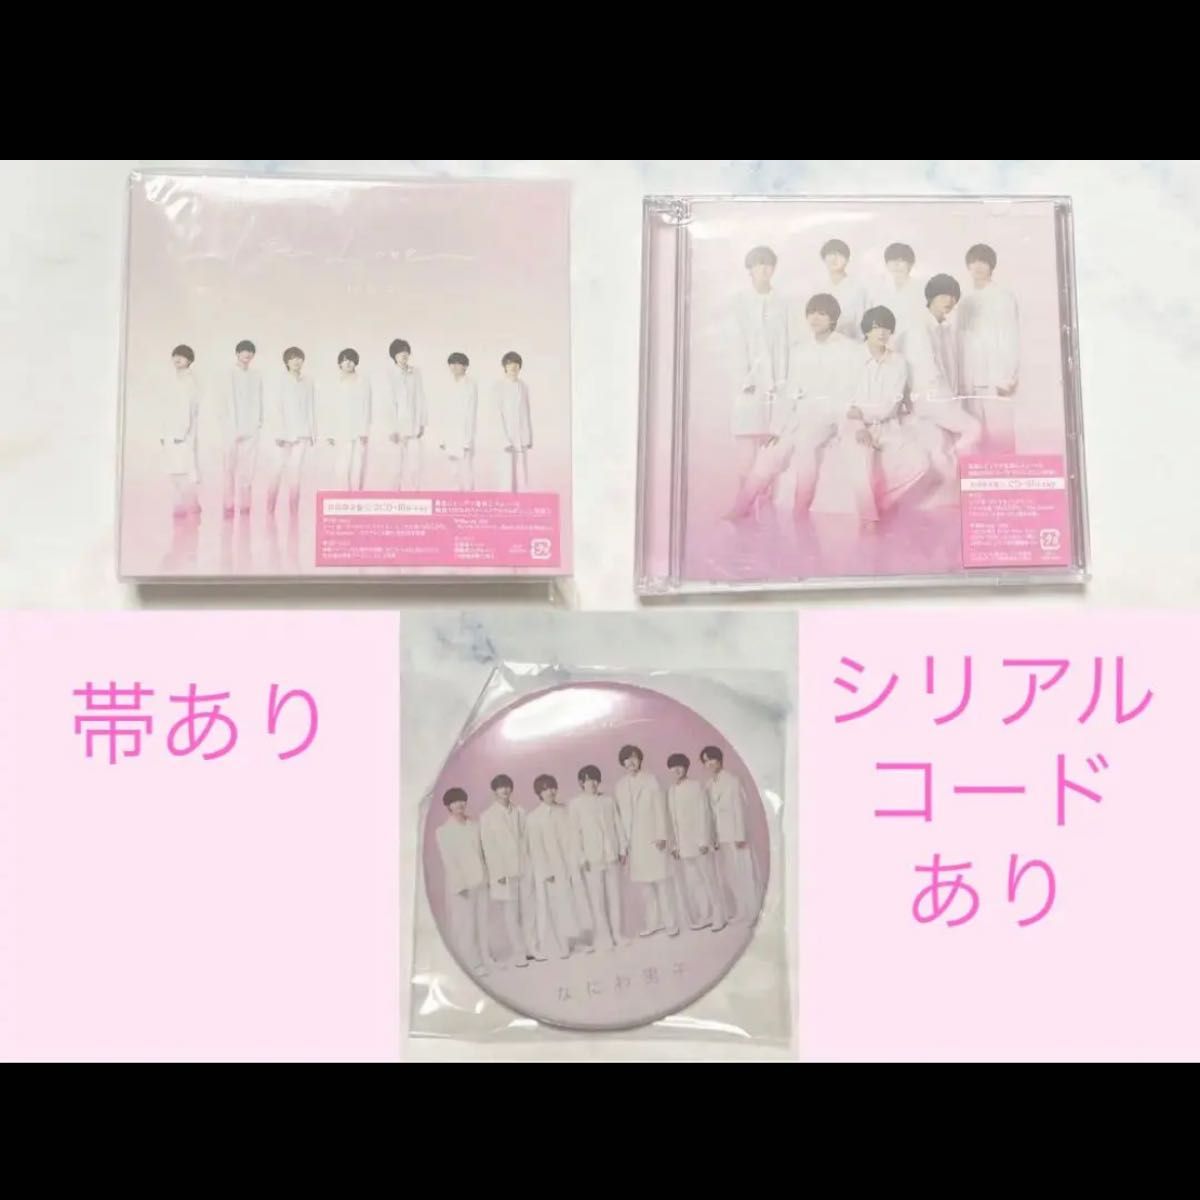 なにわ男子 ファーストアルバム 1st Love 初回限定盤1.2 セット CD Blu-ray